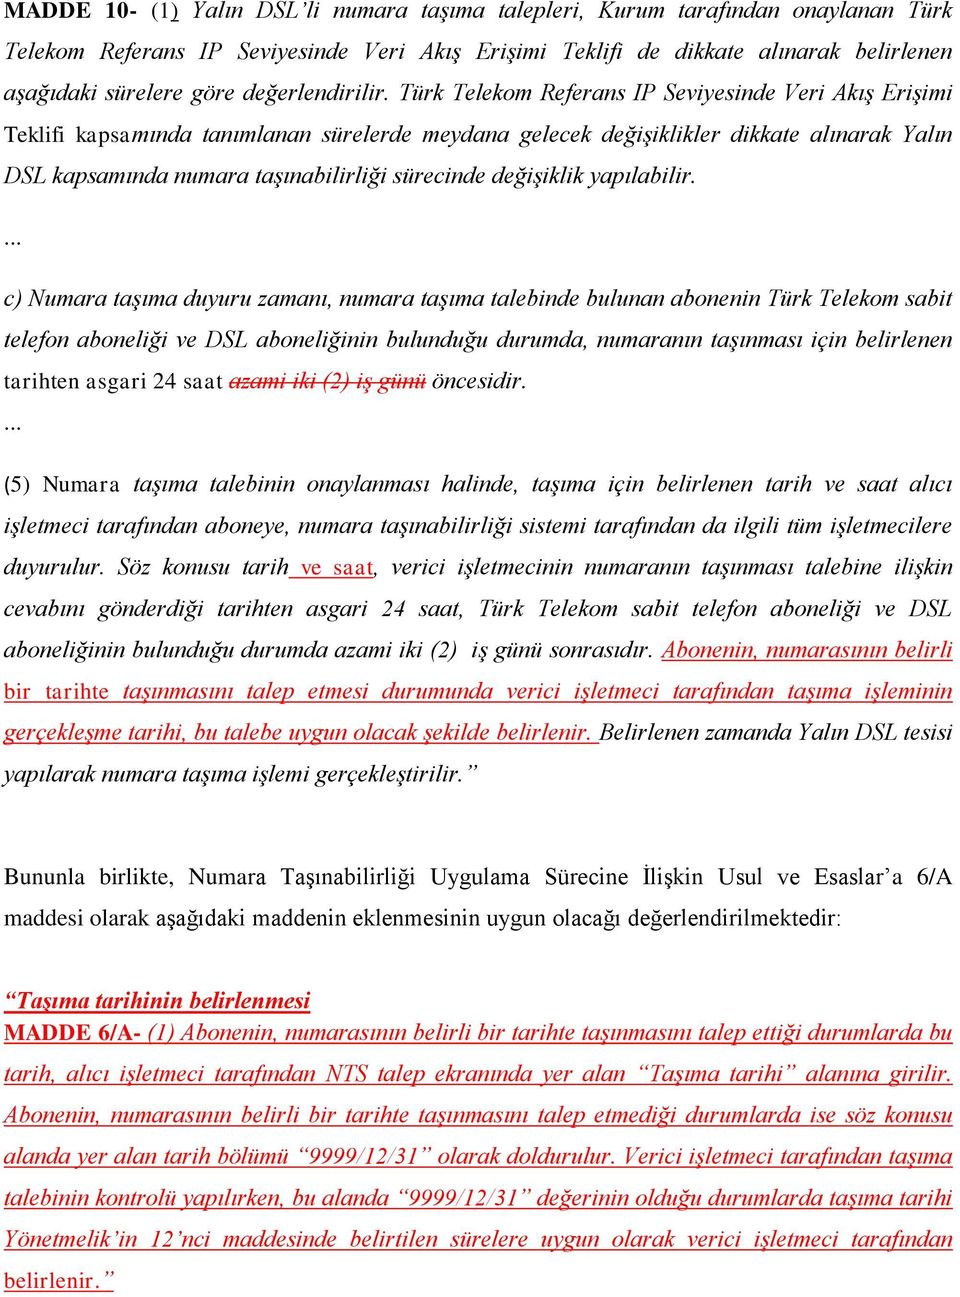 Türk Telekom Referans IP Seviyesinde Veri Akış Erişimi Teklifi kapsamında tanımlanan sürelerde meydana gelecek değişiklikler dikkate alınarak Yalın DSL kapsamında numara taşınabilirliği sürecinde